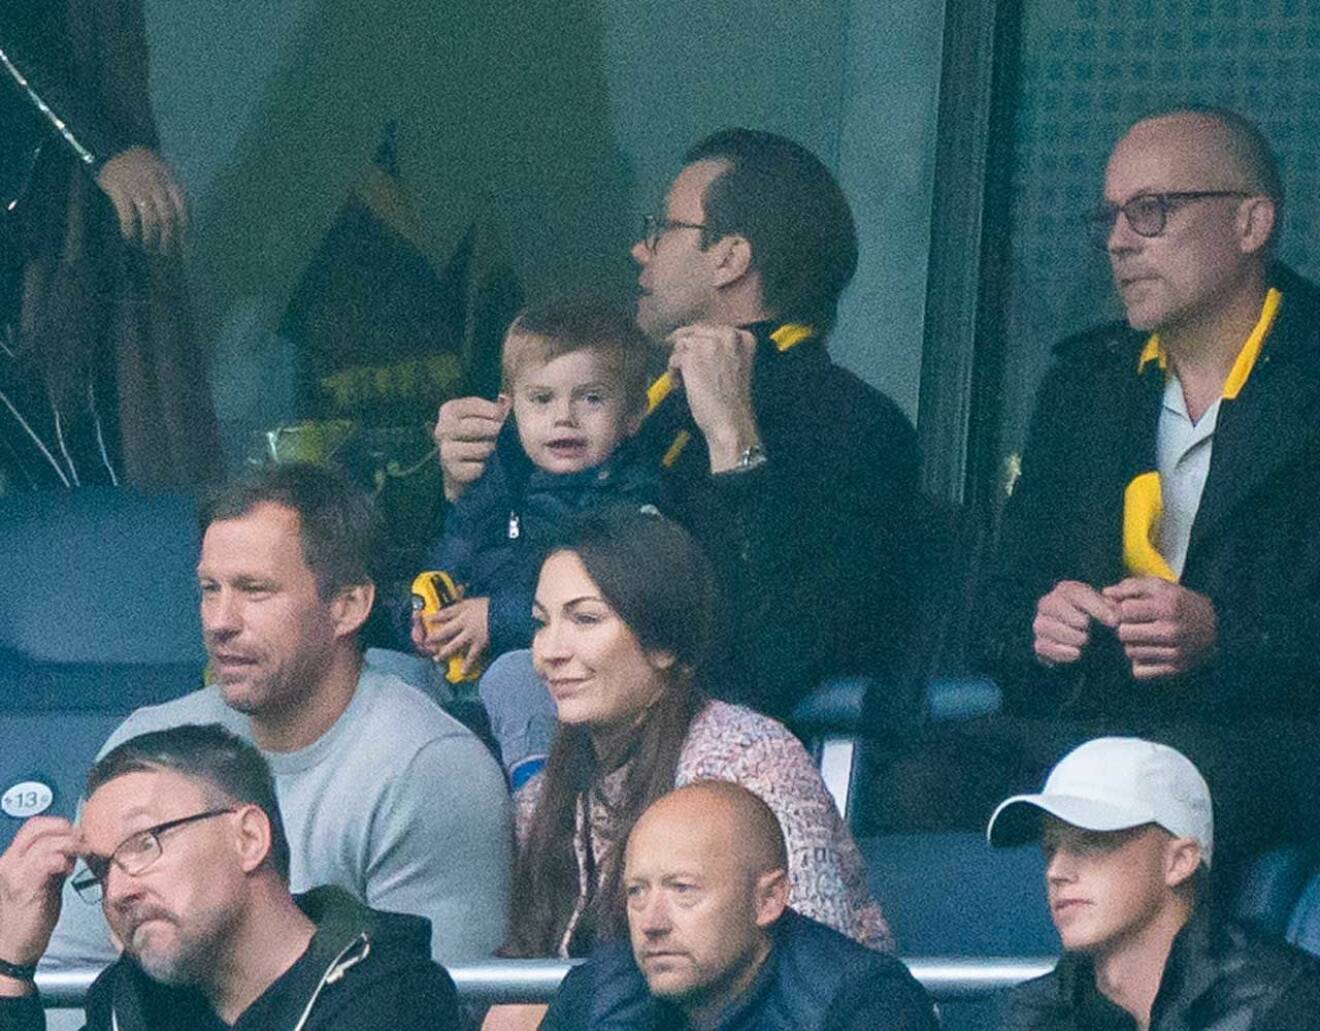 Prins Daniel och hans kompis på vip-läktaren på Friends, i sina AIK-halsdukar. Prins Oscar fick en AIK-gul leksaksbil.